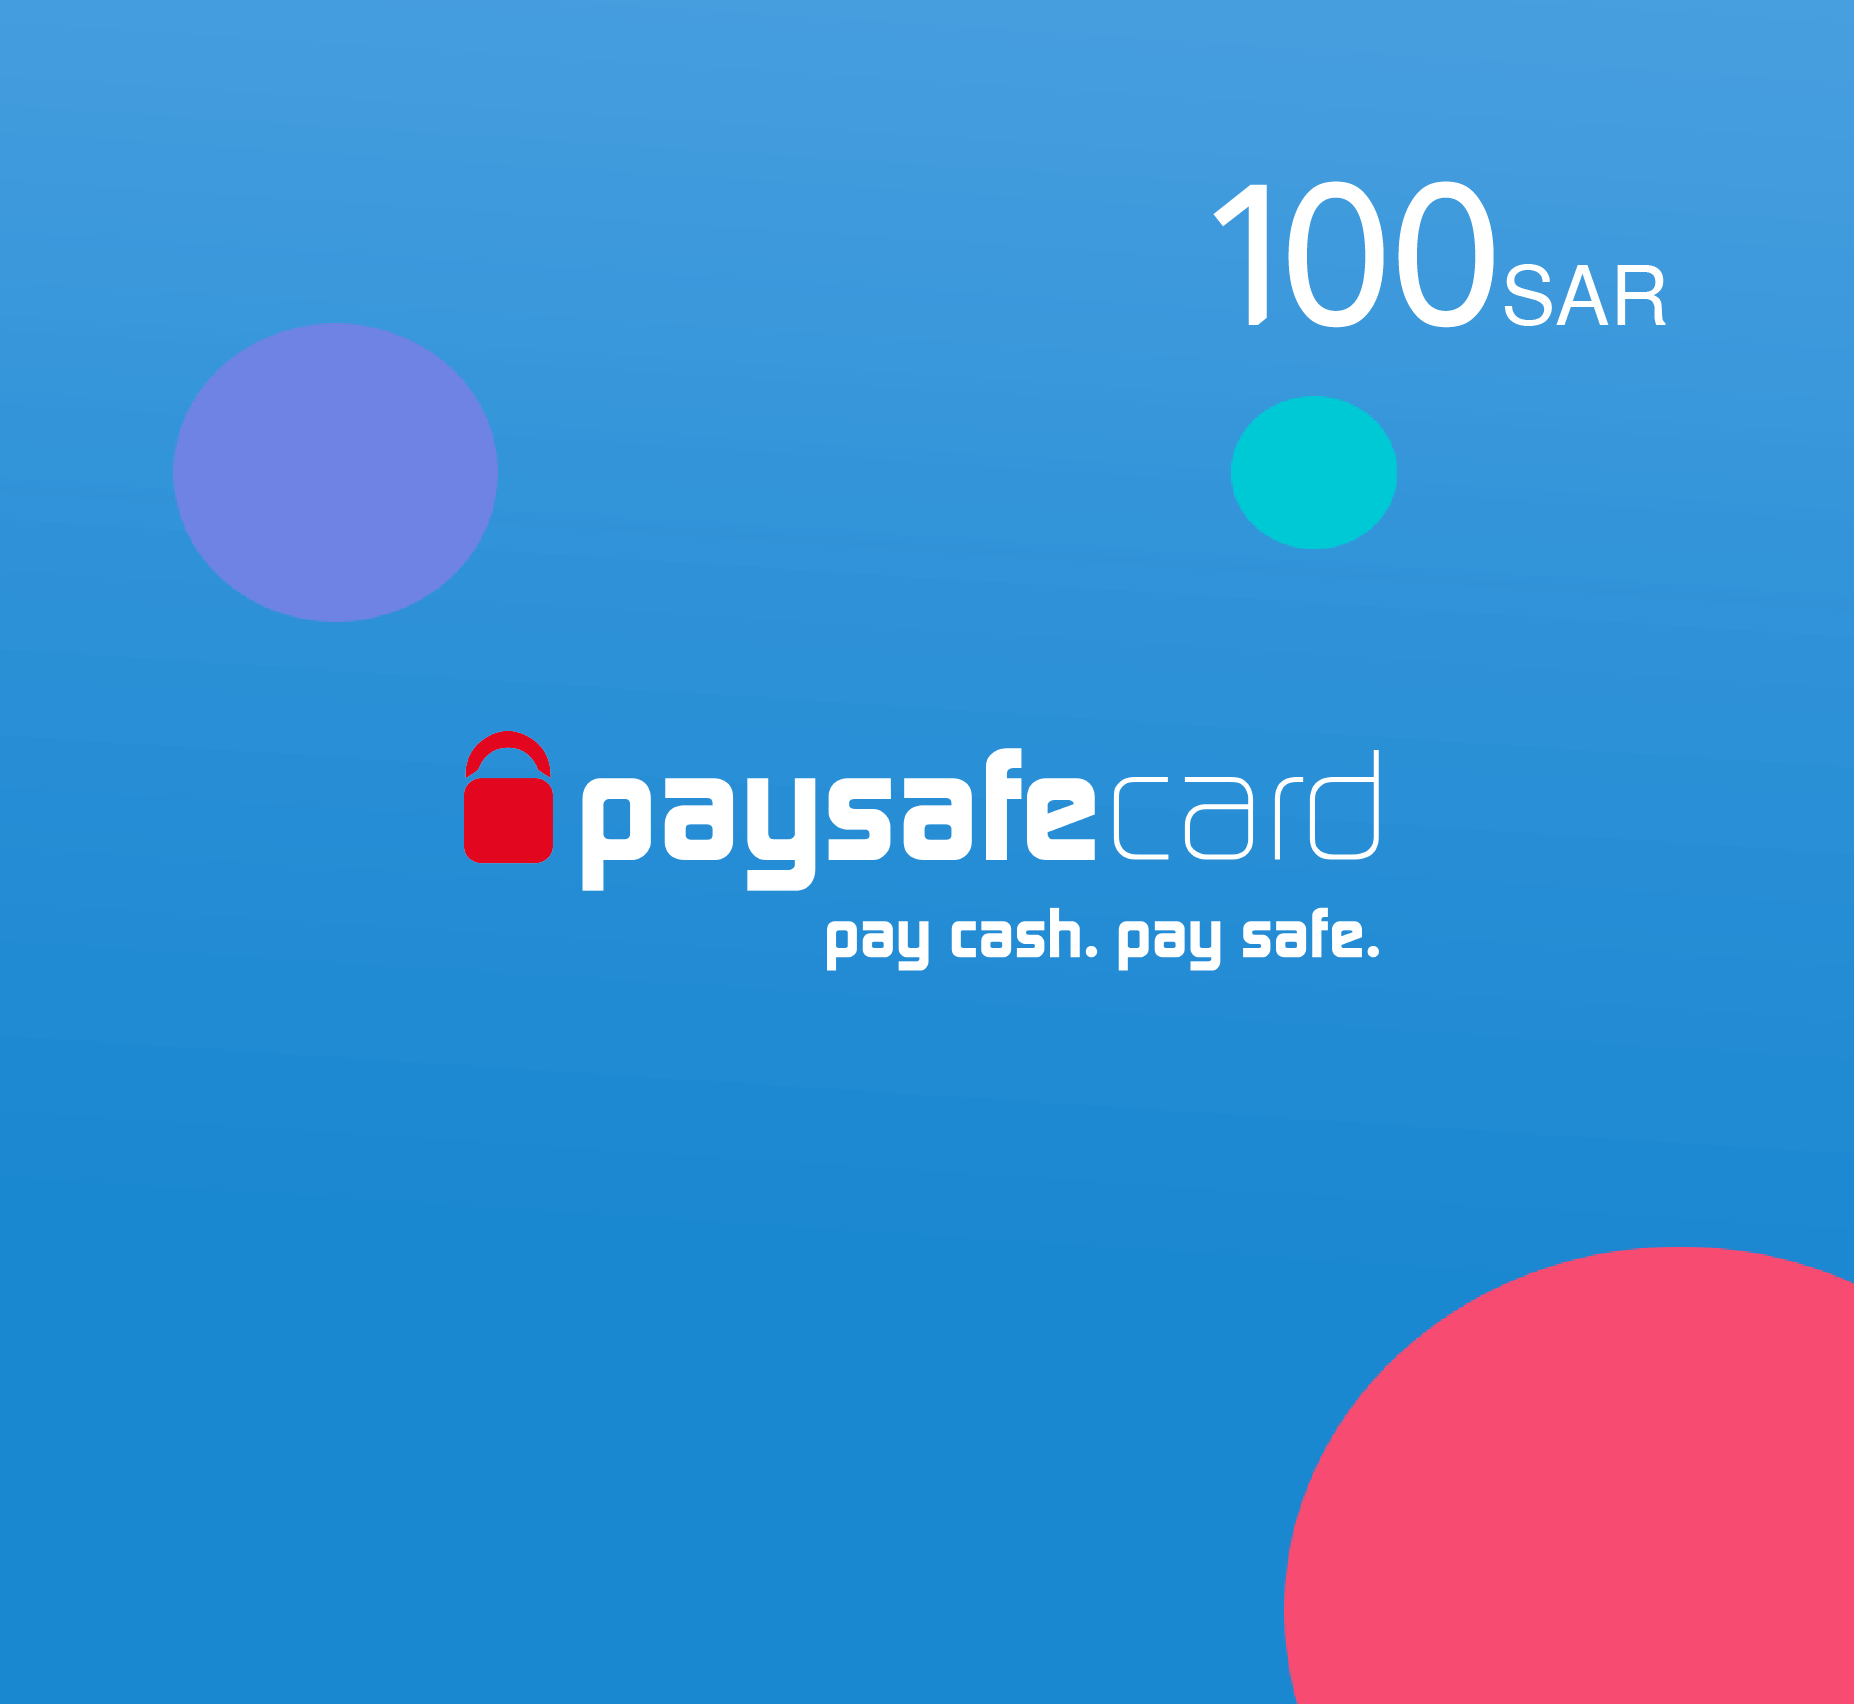 Paysafe card 100 SAR